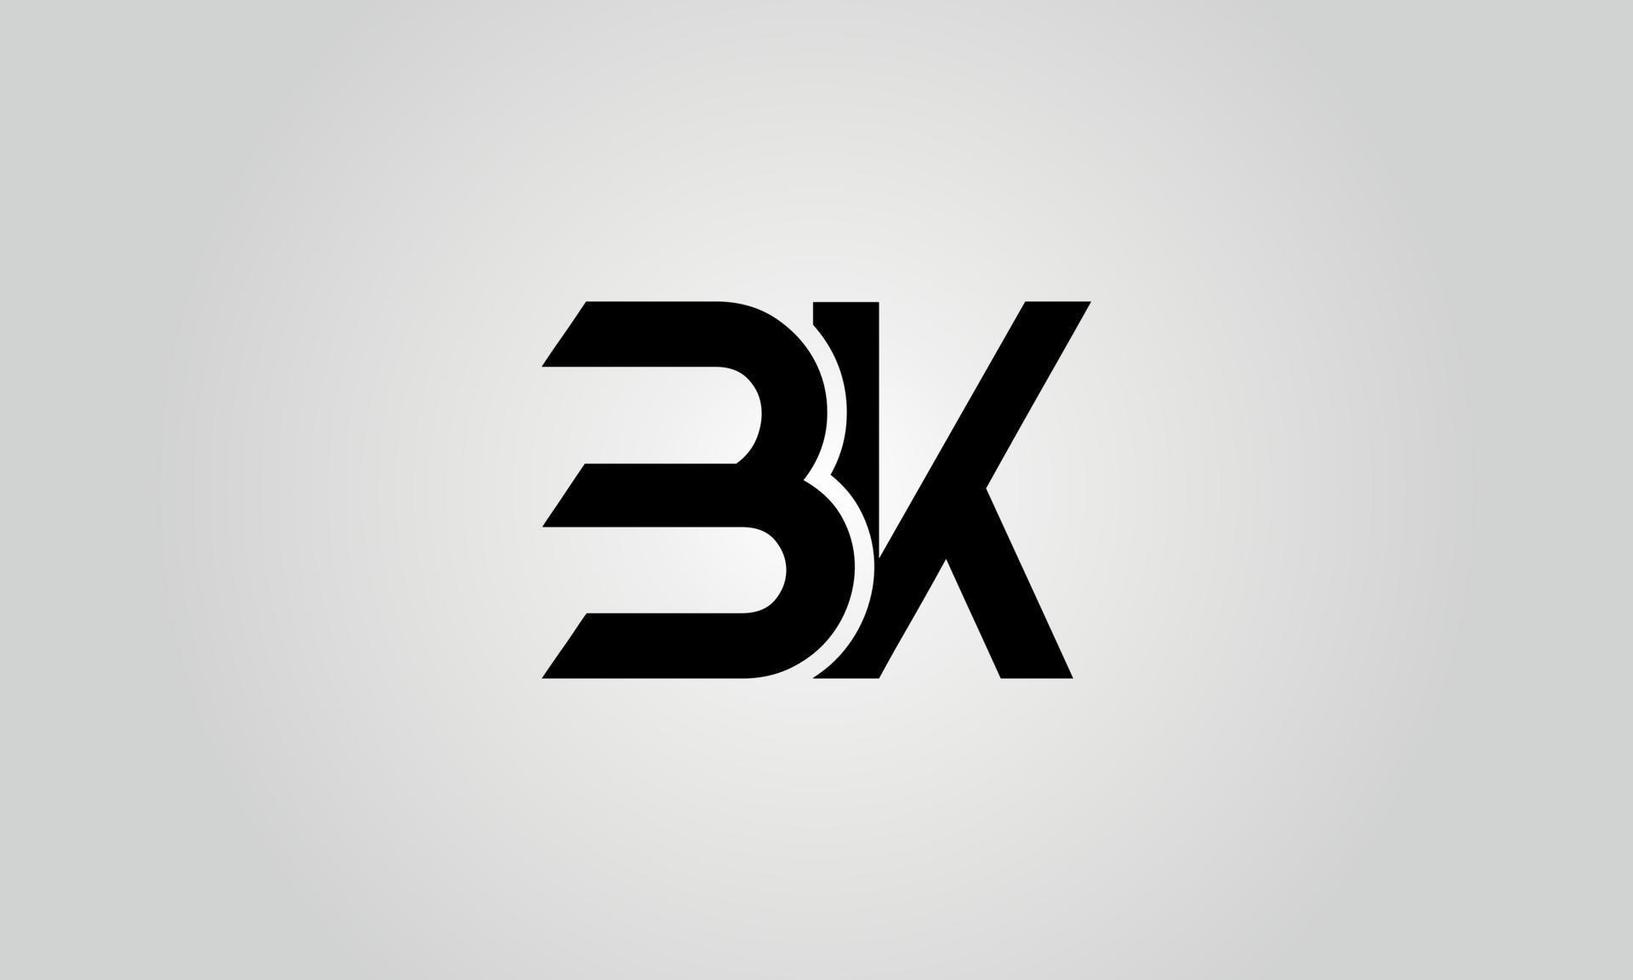 design de logotipo bk. modelo de vetor pro design inicial do logotipo da letra bk.